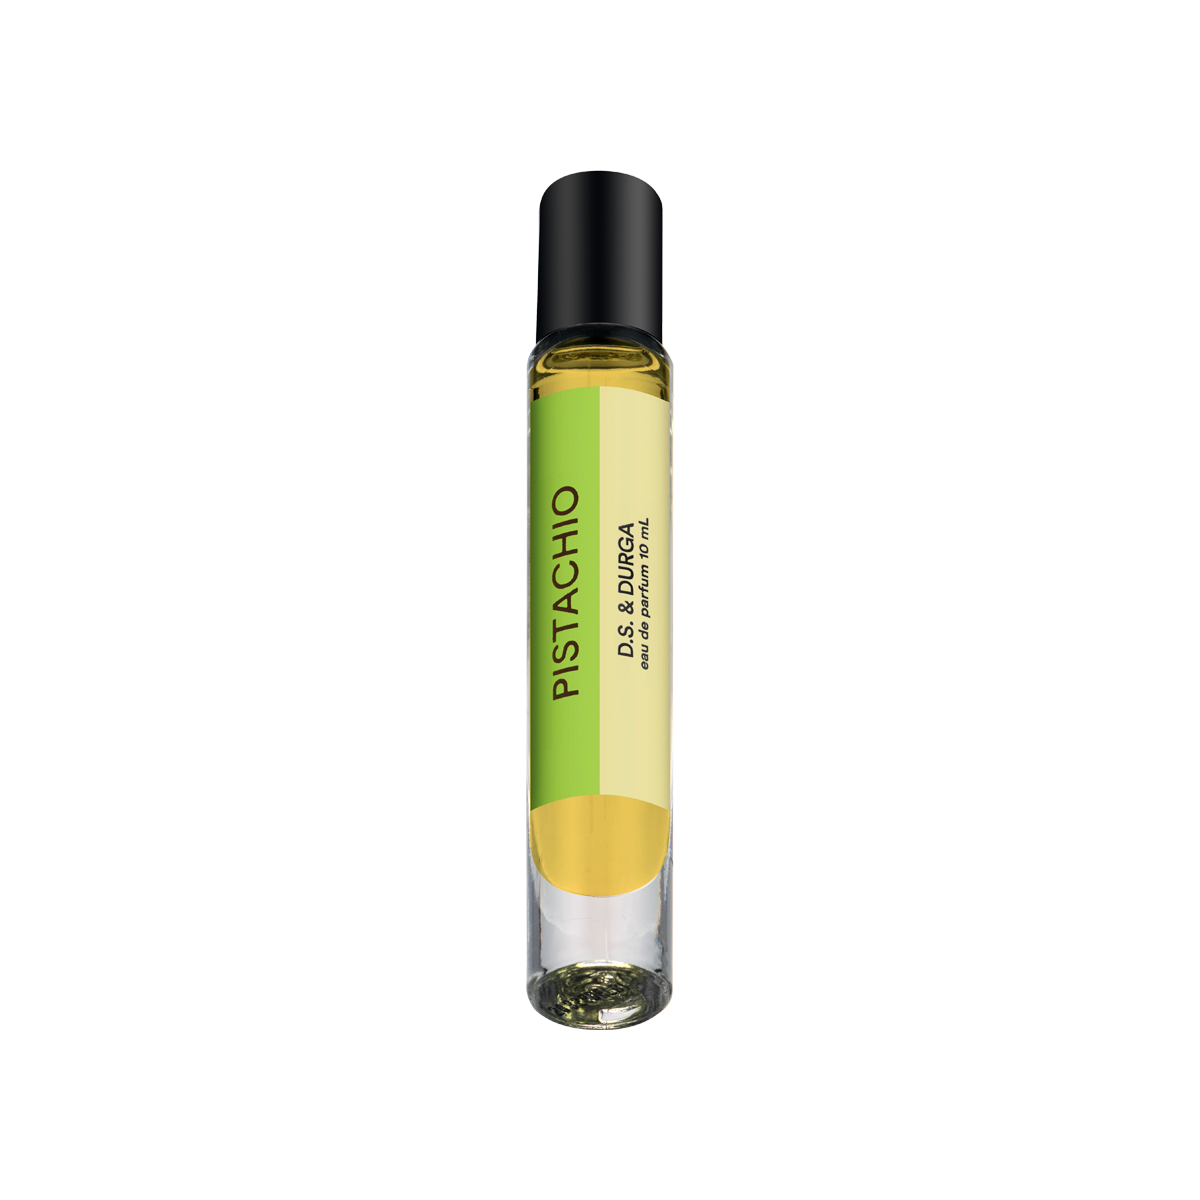 D.S. & DURGA - Pistachio Perfume Oil